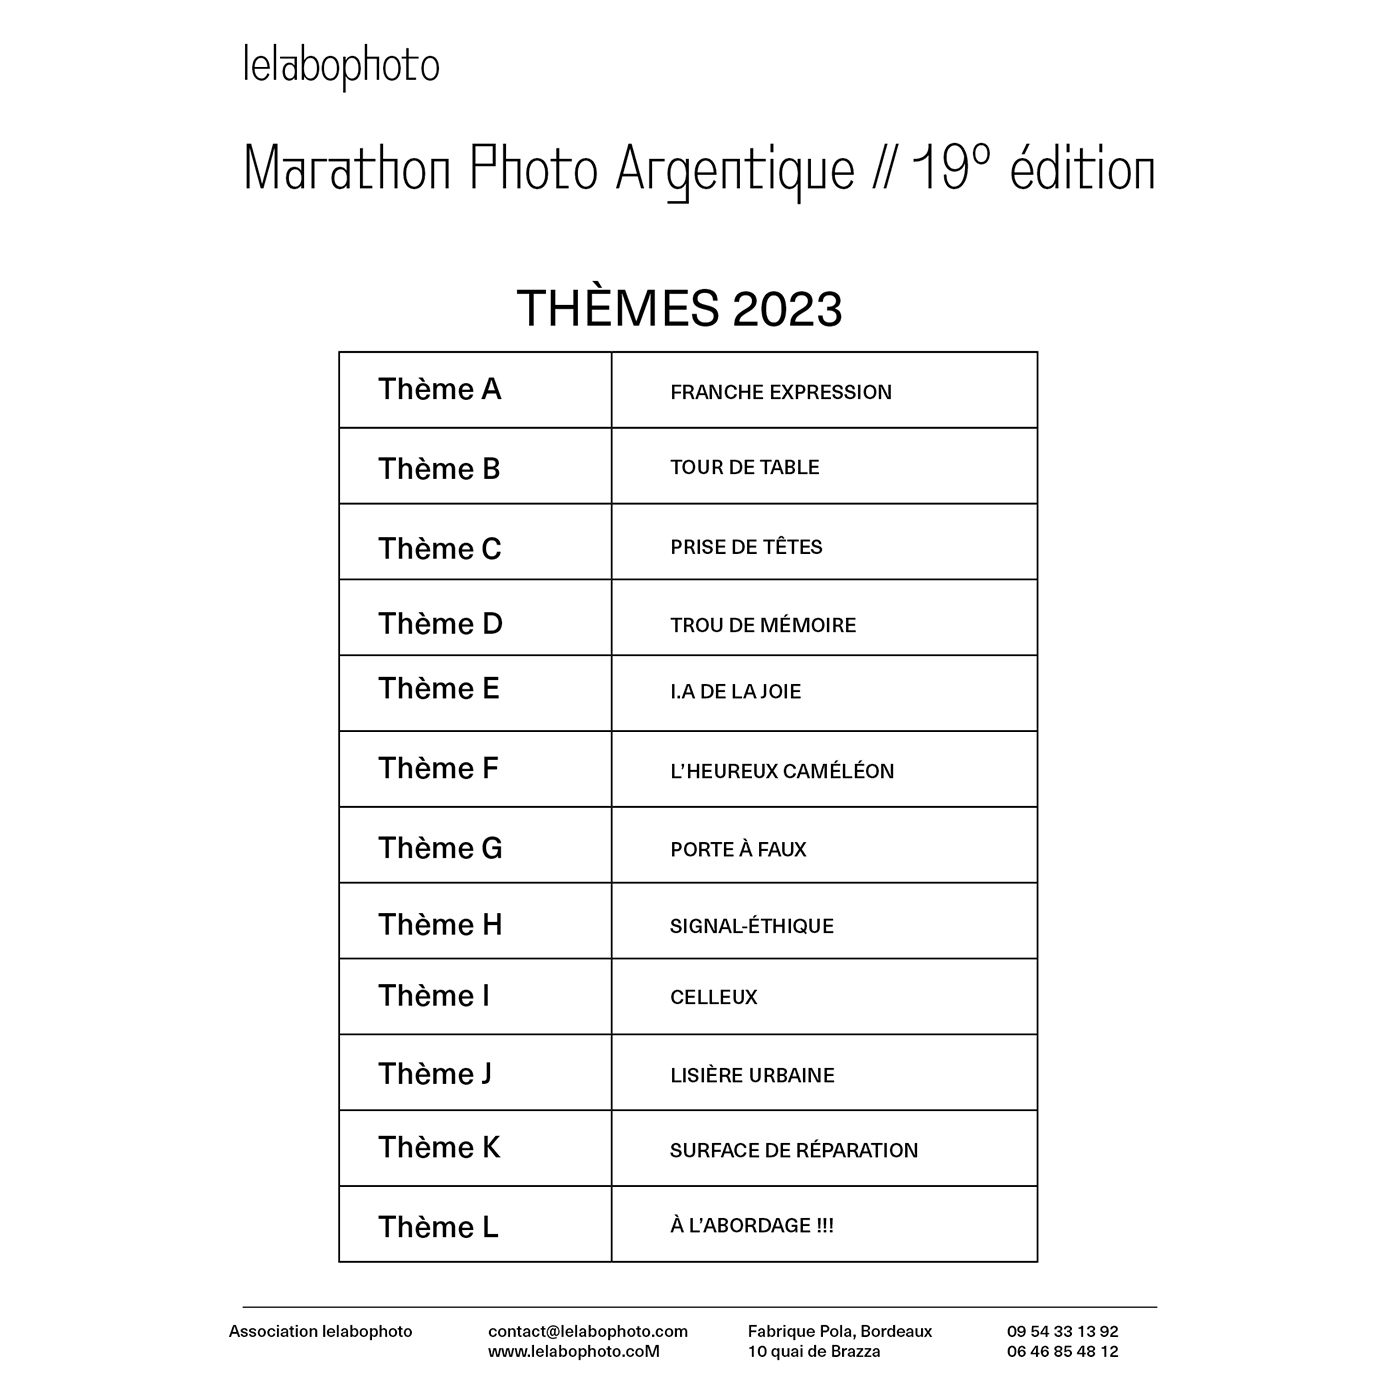 THÈMES DU MARATHON PHOTO ARGENTIQUE 2023